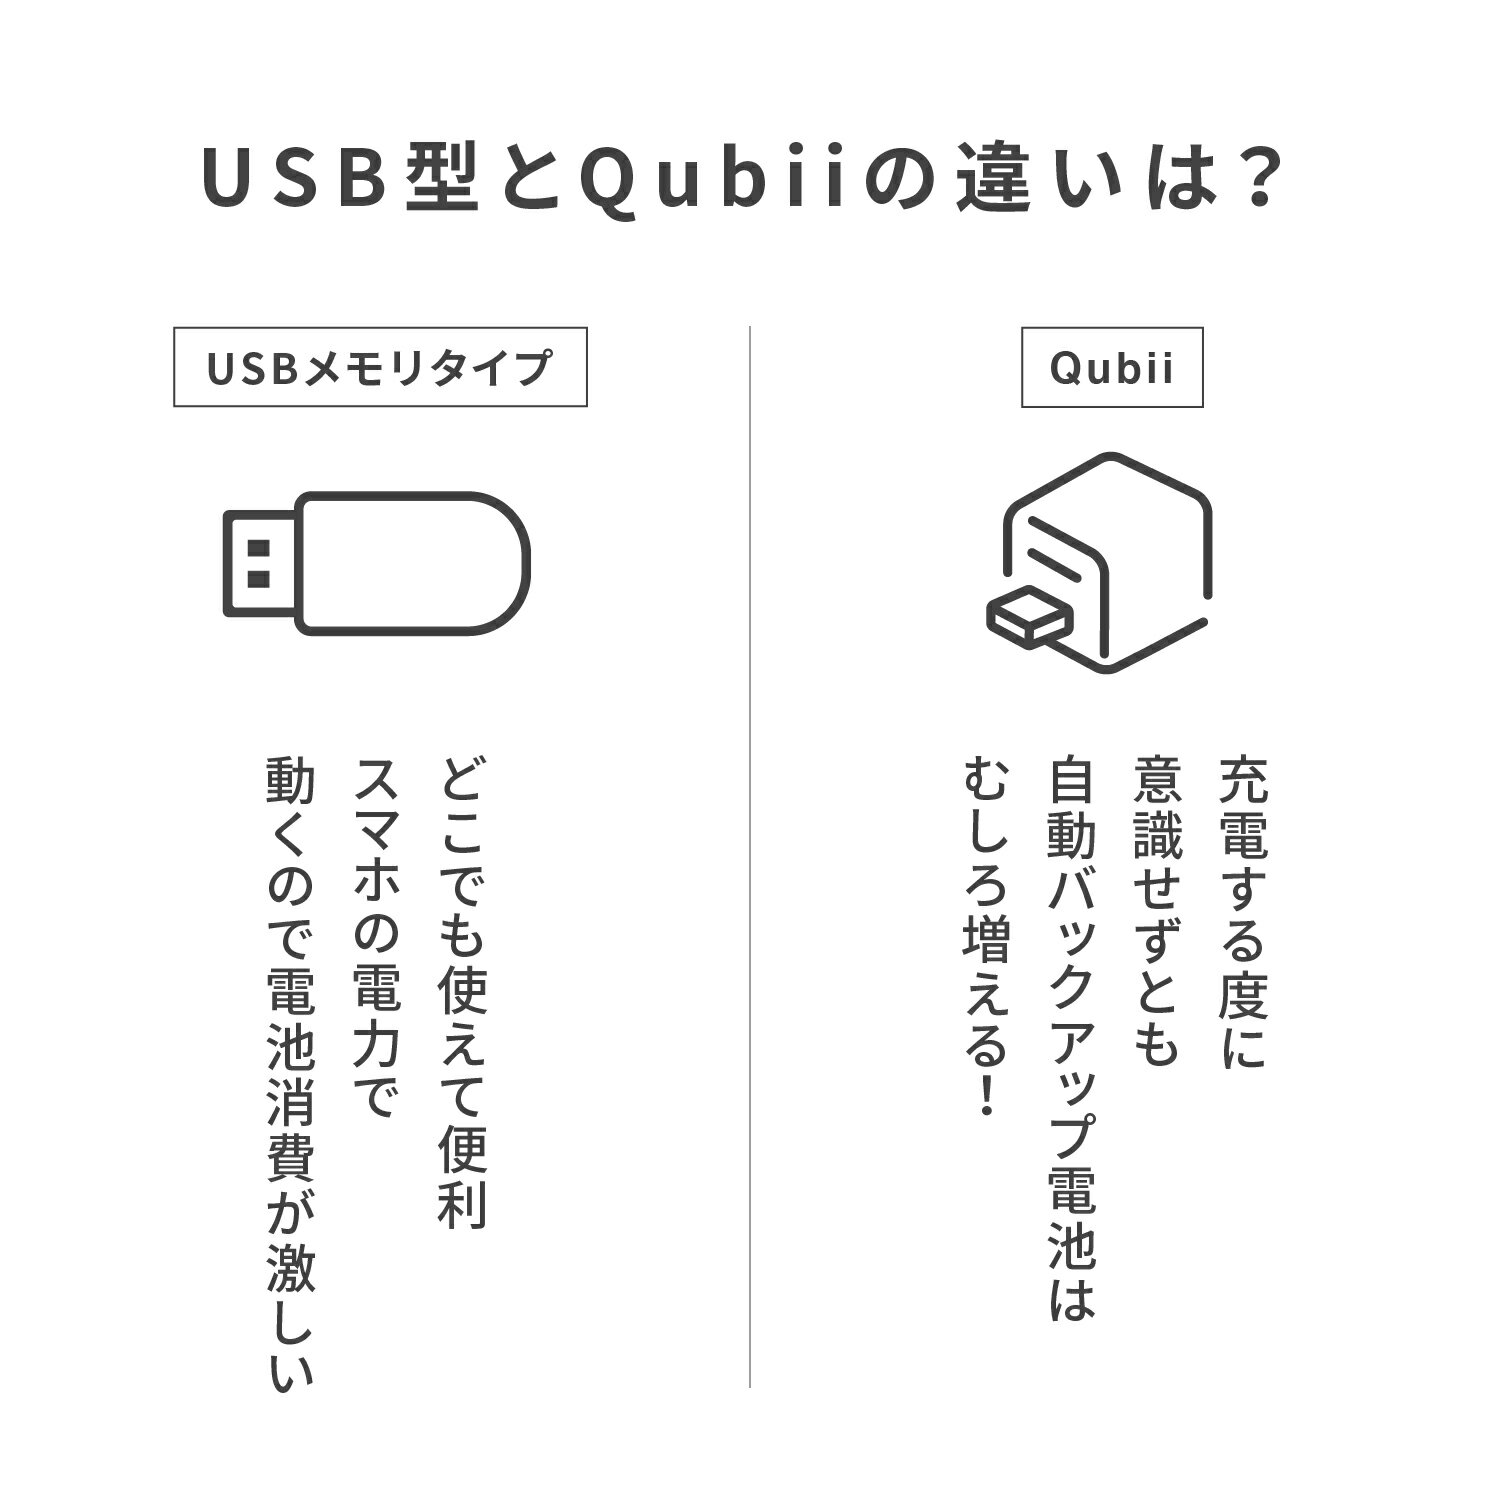 6865円 大人の上質 Maktar Qubii Pro ホワイト 充電しながら自動バックアップ iphone usbメモリ ipad 容量不足解消 写真 動画 音